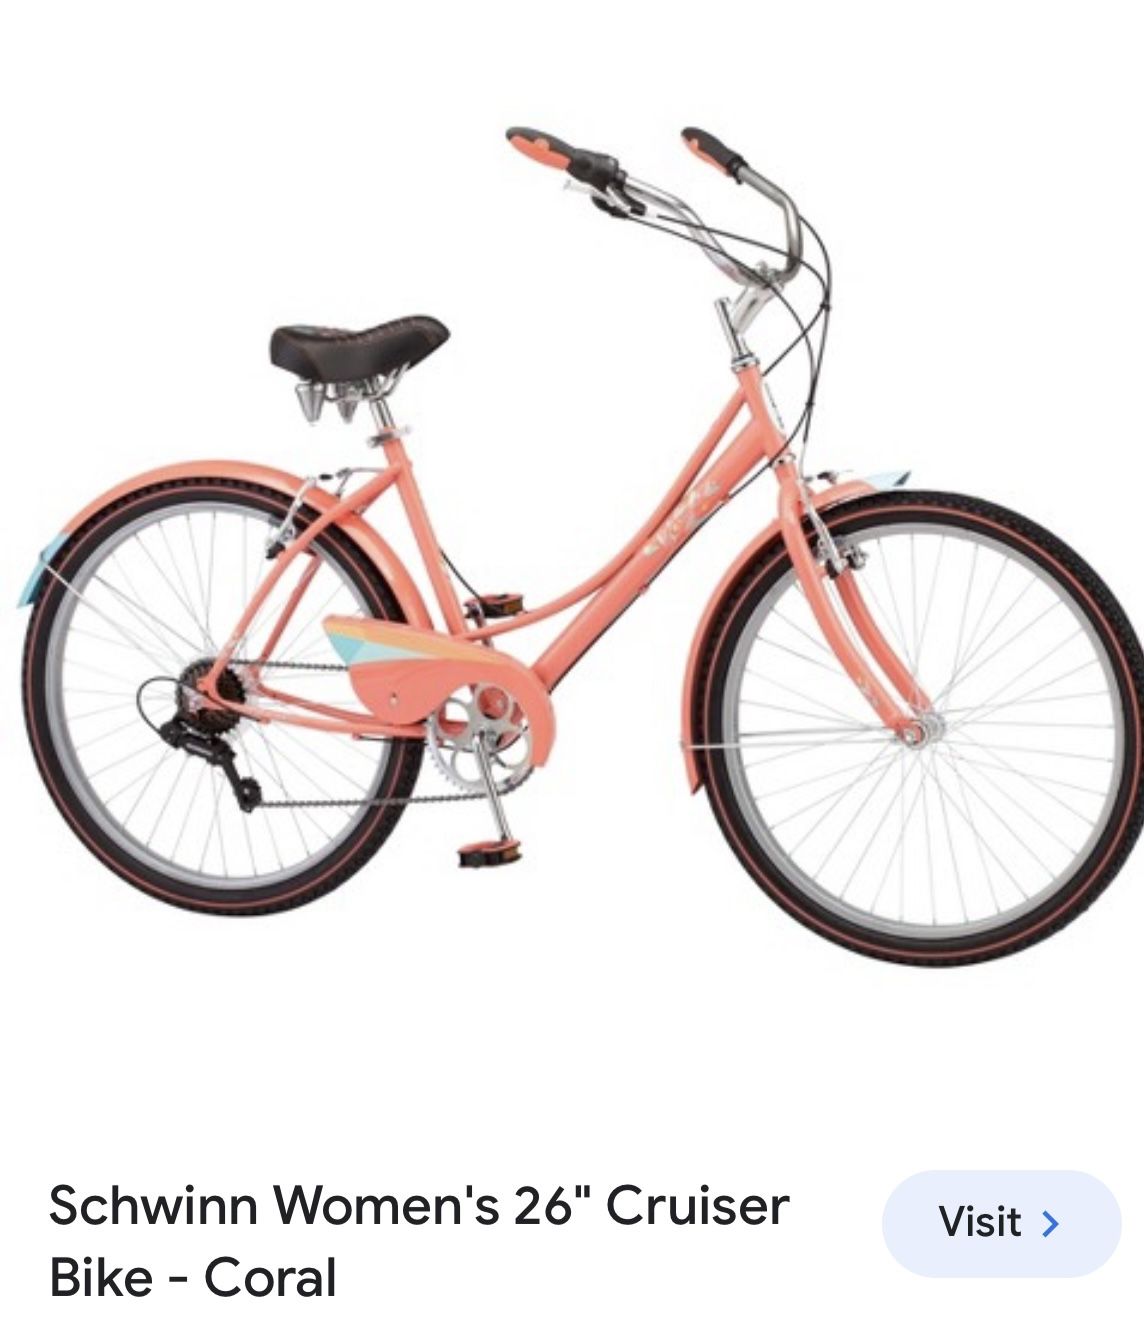 Schwinn Woman’s 26” Cruiser 